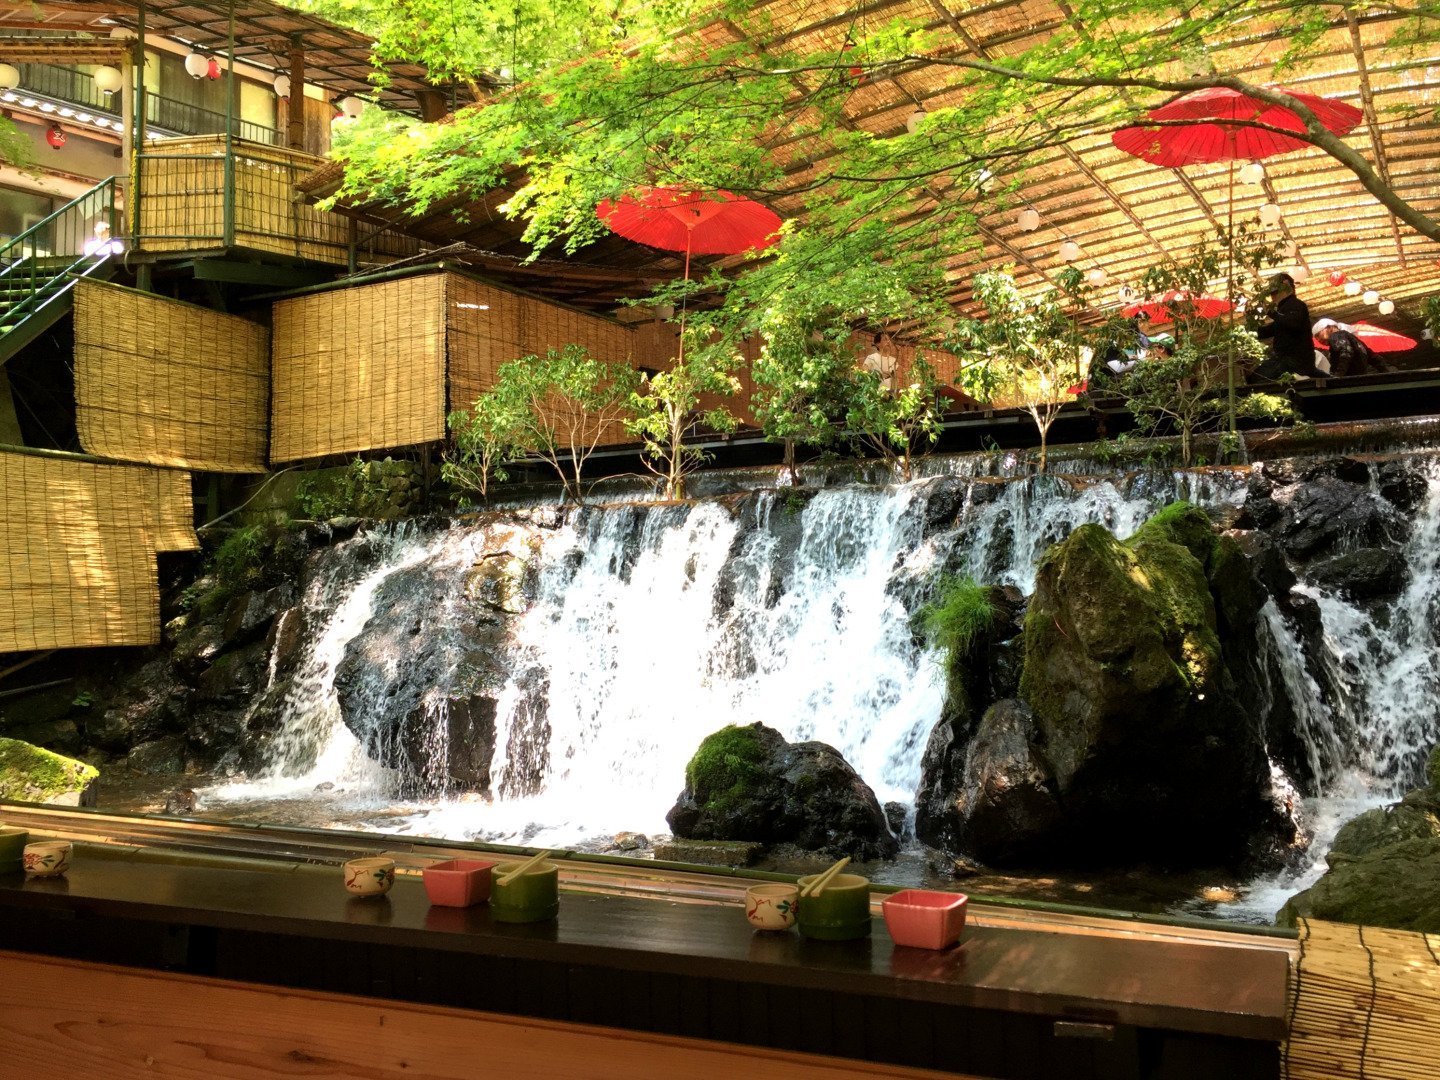 【京都旅途故事】拍照是旅途中最不重要的事